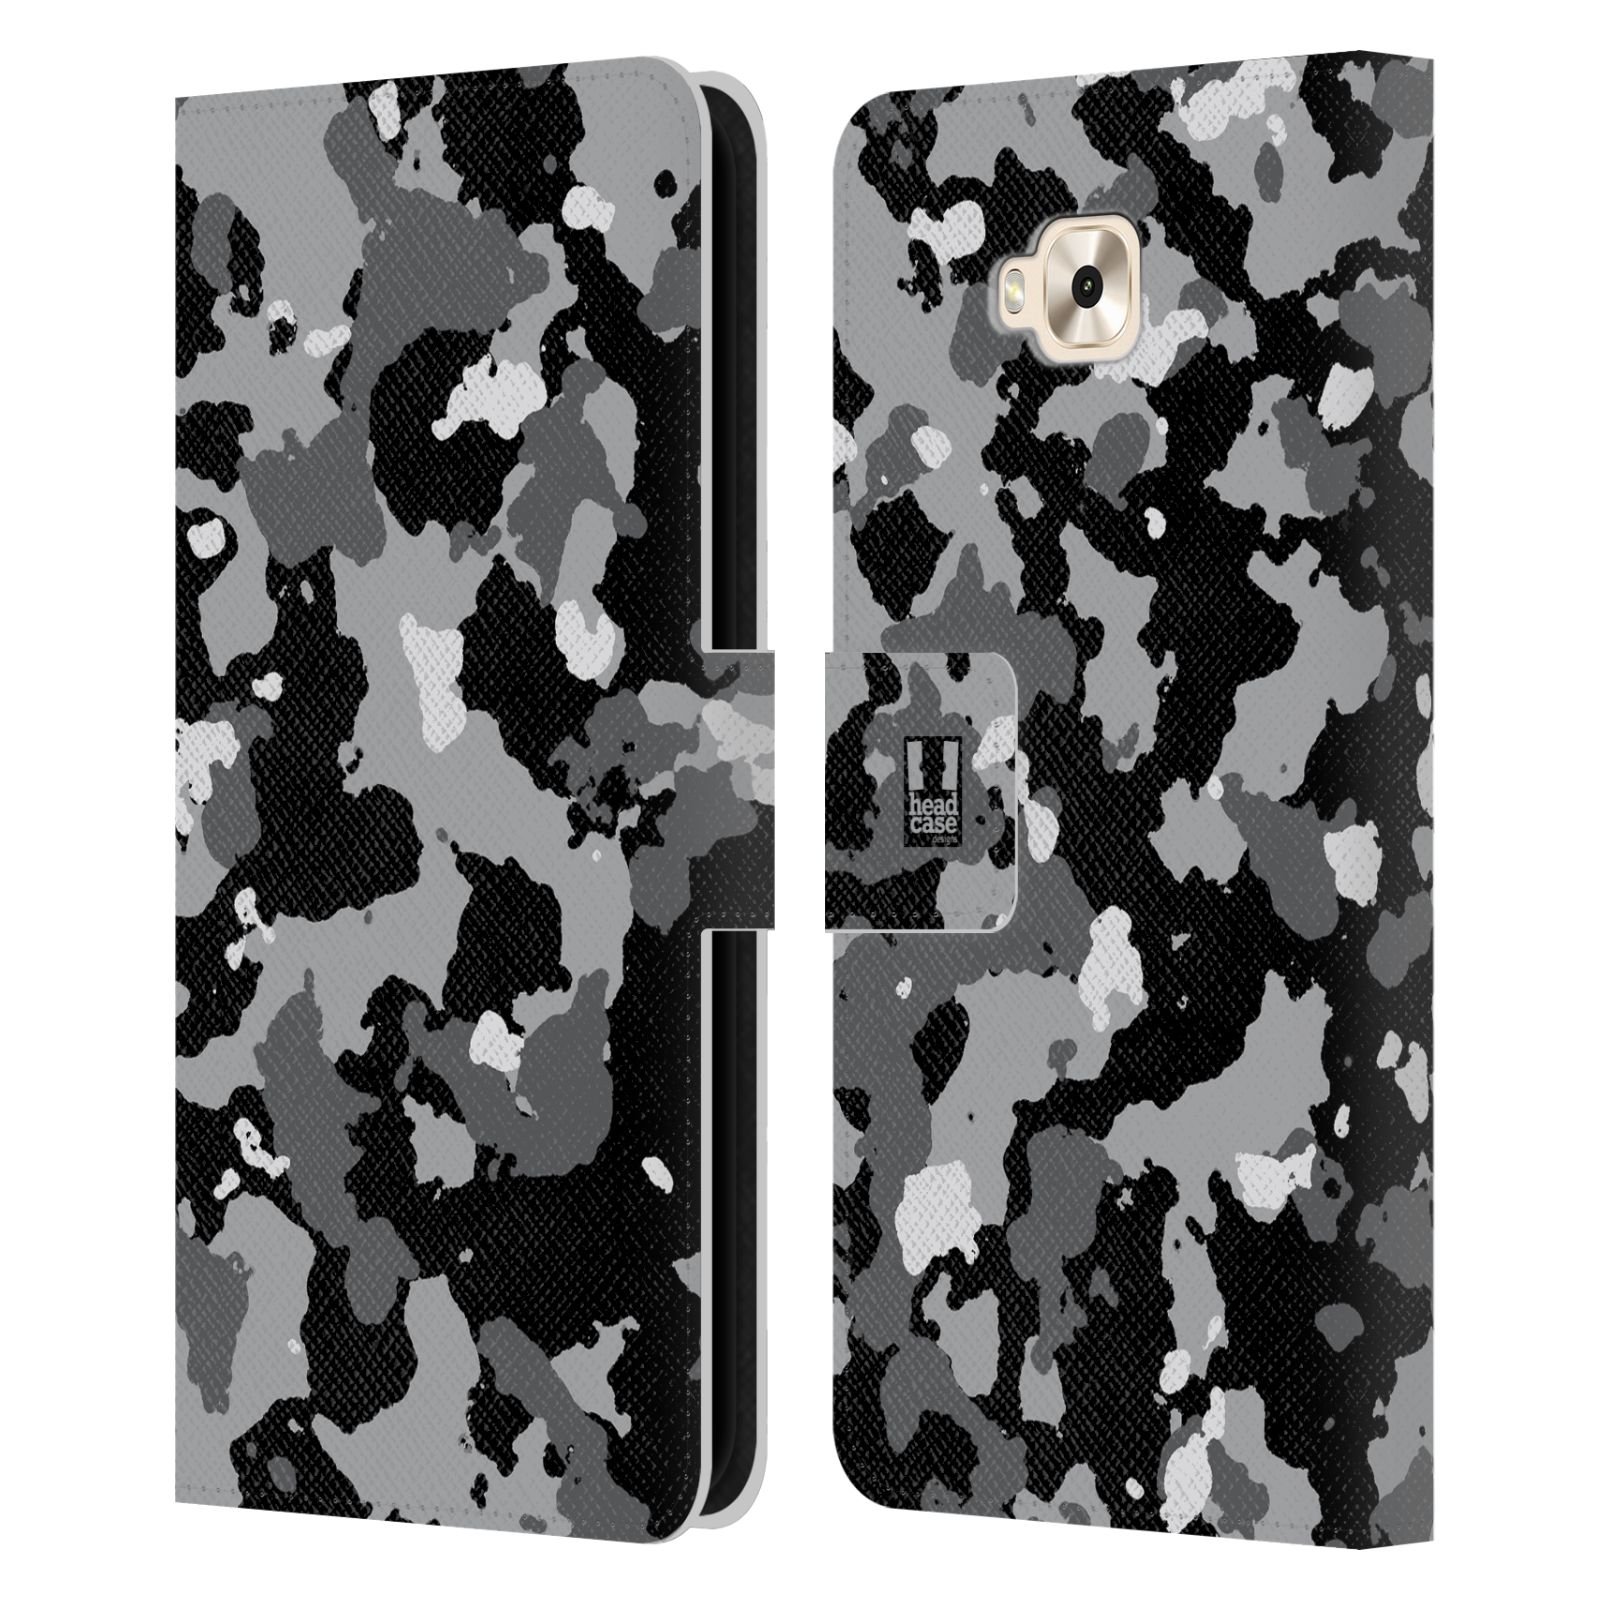 Pouzdro na mobil Asus Zenfone 4 Selfie ZD553KL - Head Case - kamuflaž černá a šedá